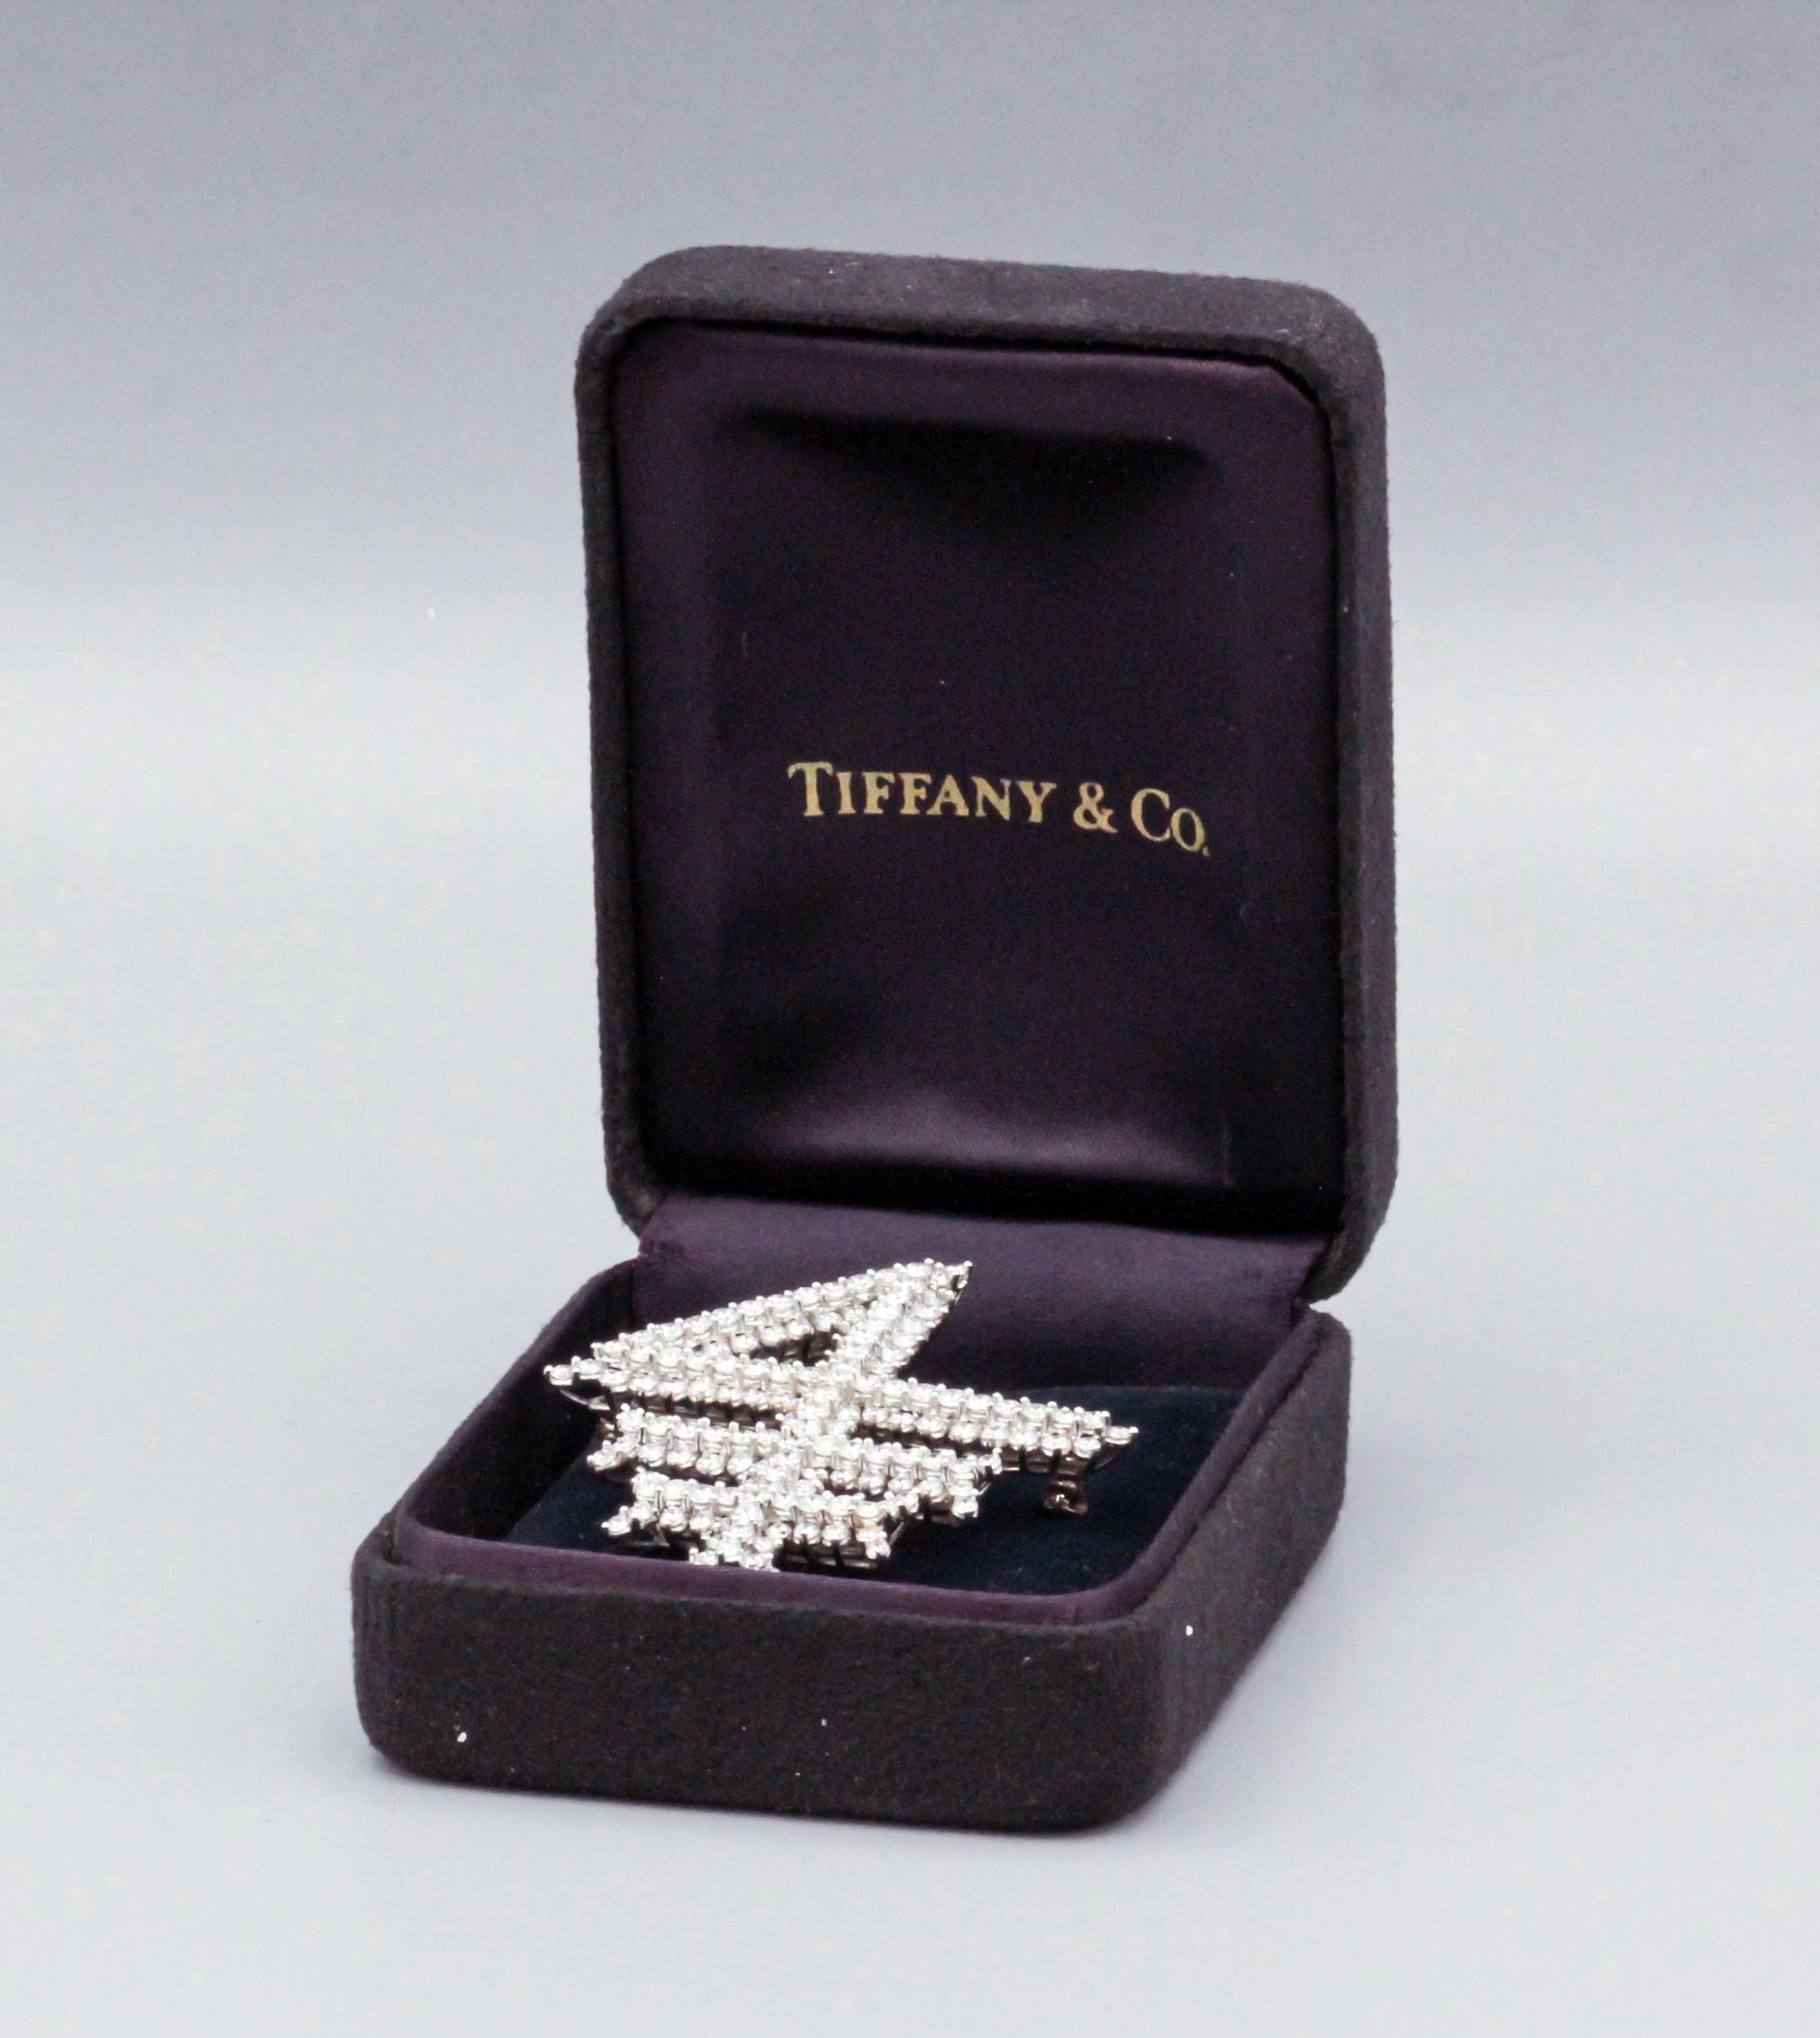 Für Ihre Betrachtung, eine feine eine seltene Tiffany & Co. Diamant und Platin Brosche in der Ähnlichkeit des Columbia Business School Logo gemacht.  Möglicherweise ein Einzelstück. 

Diese Brosche aus Diamanten und Platin von Tiffany & Co. aus den